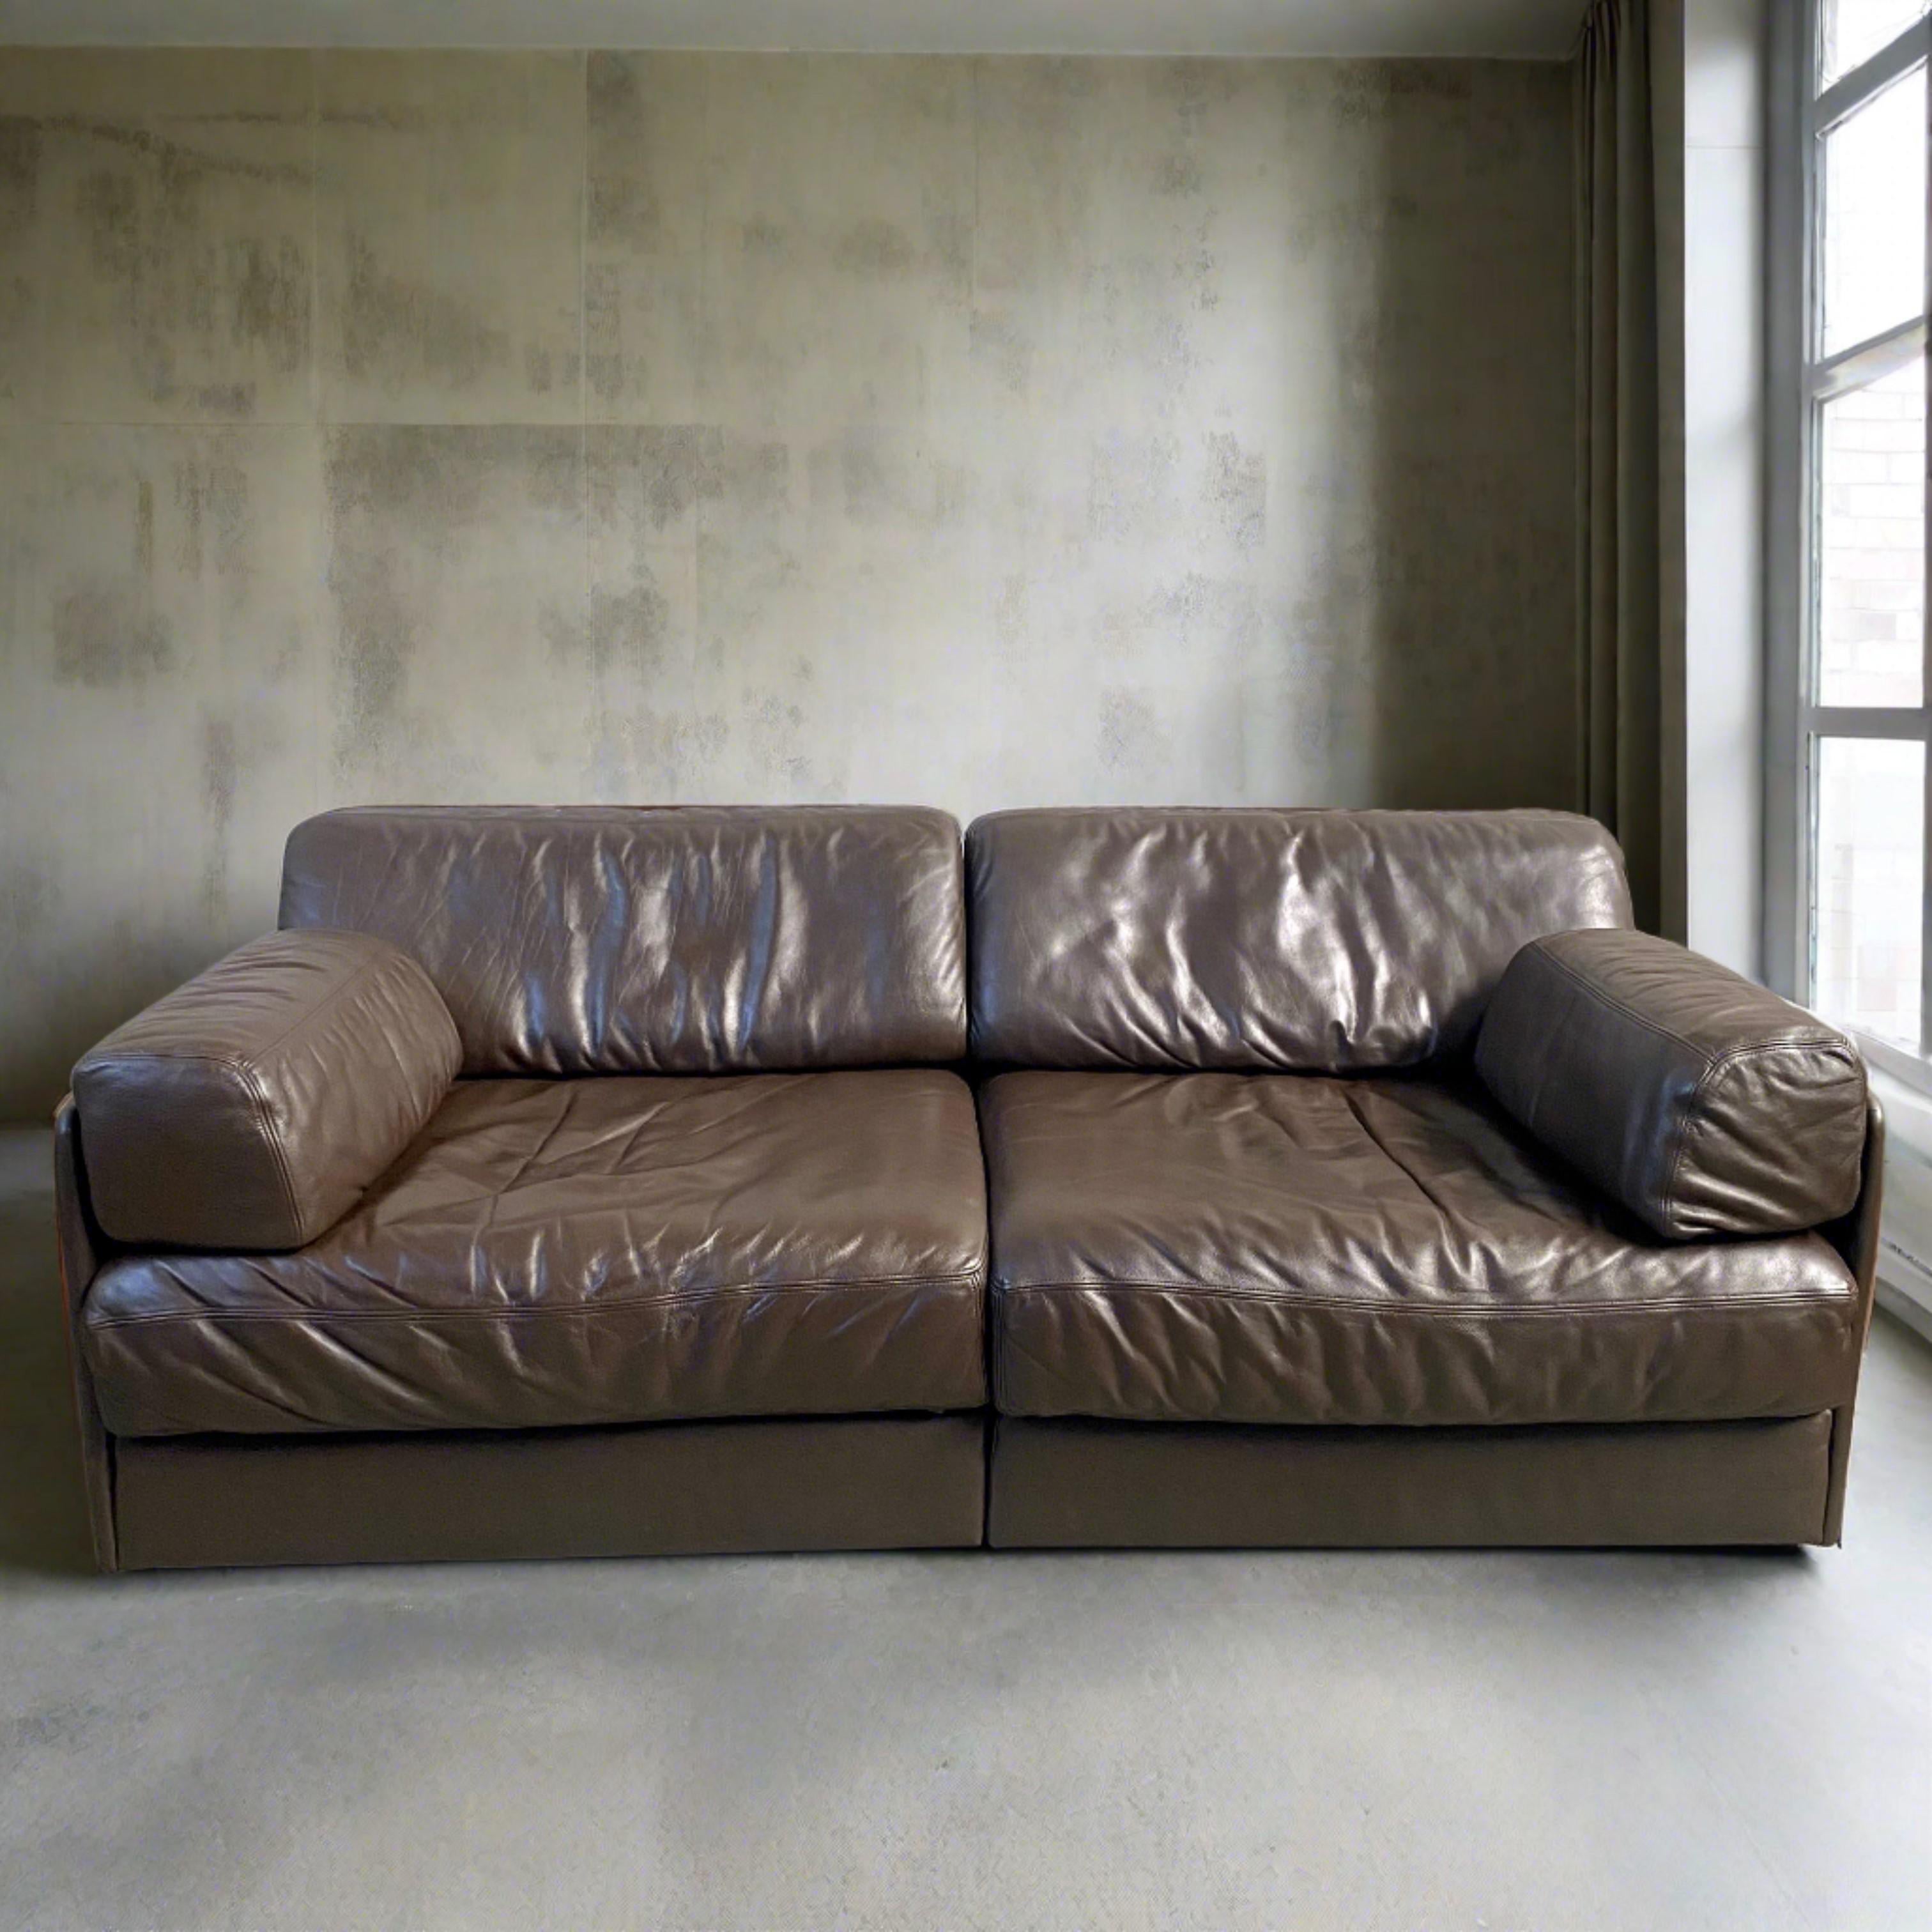 En matière de design emblématique du milieu du siècle, le canapé 2 places DE SEDE DS76 est un véritable chef-d'œuvre. Fabriqué par la célèbre équipe de designers de DE SEDE en 1972, ce canapé allie sans effort forme et fonction. Non seulement il